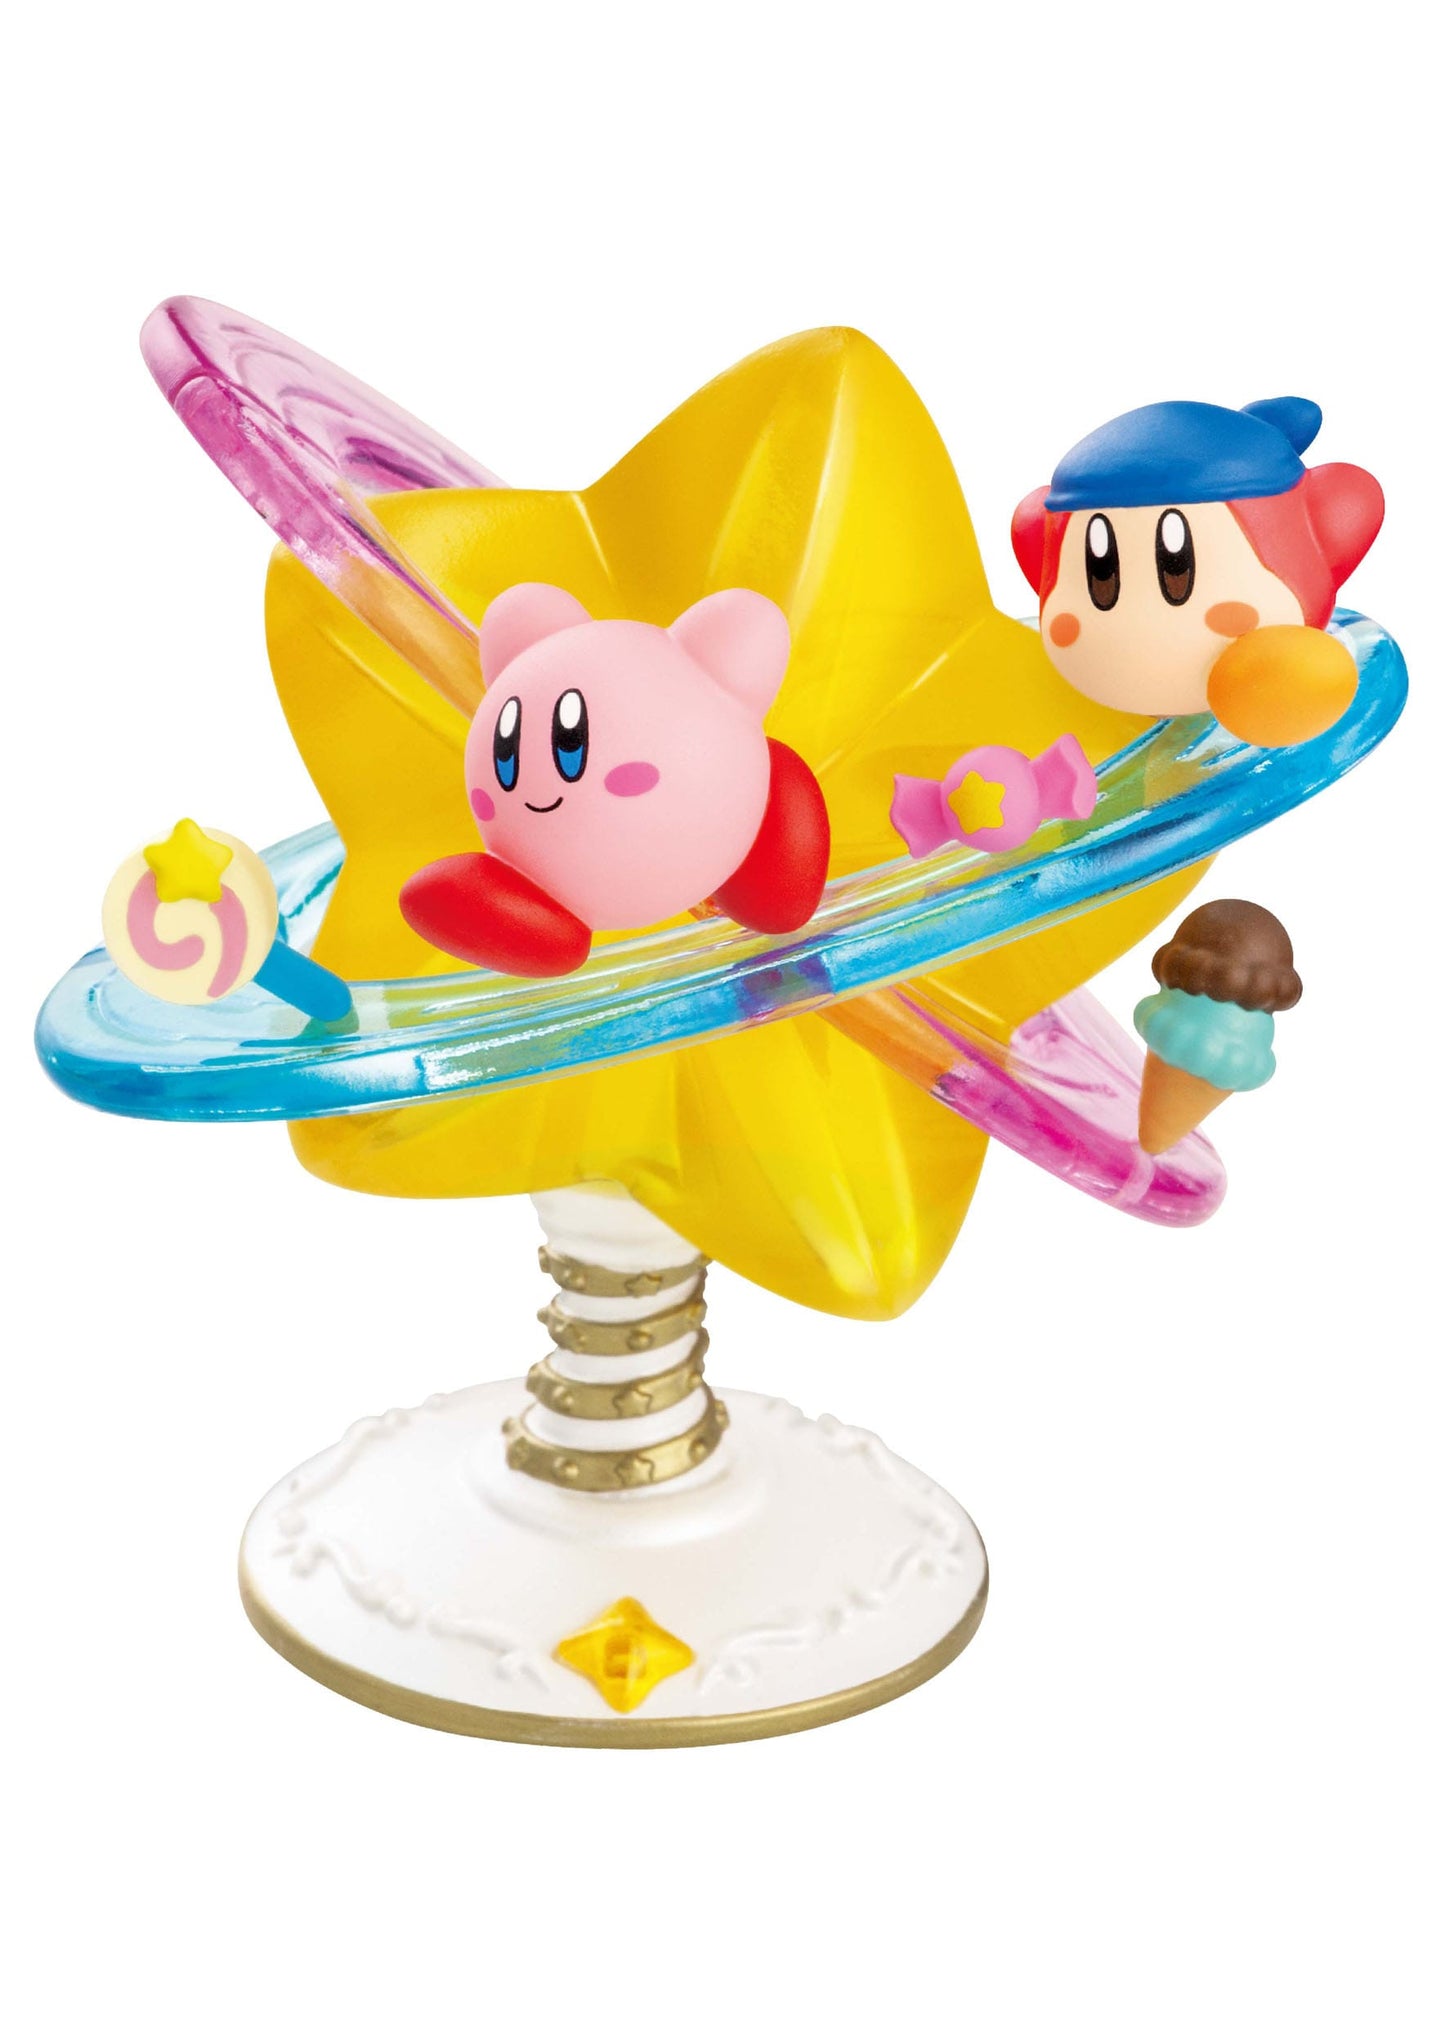 Kirby Mini Figures - Pop Star